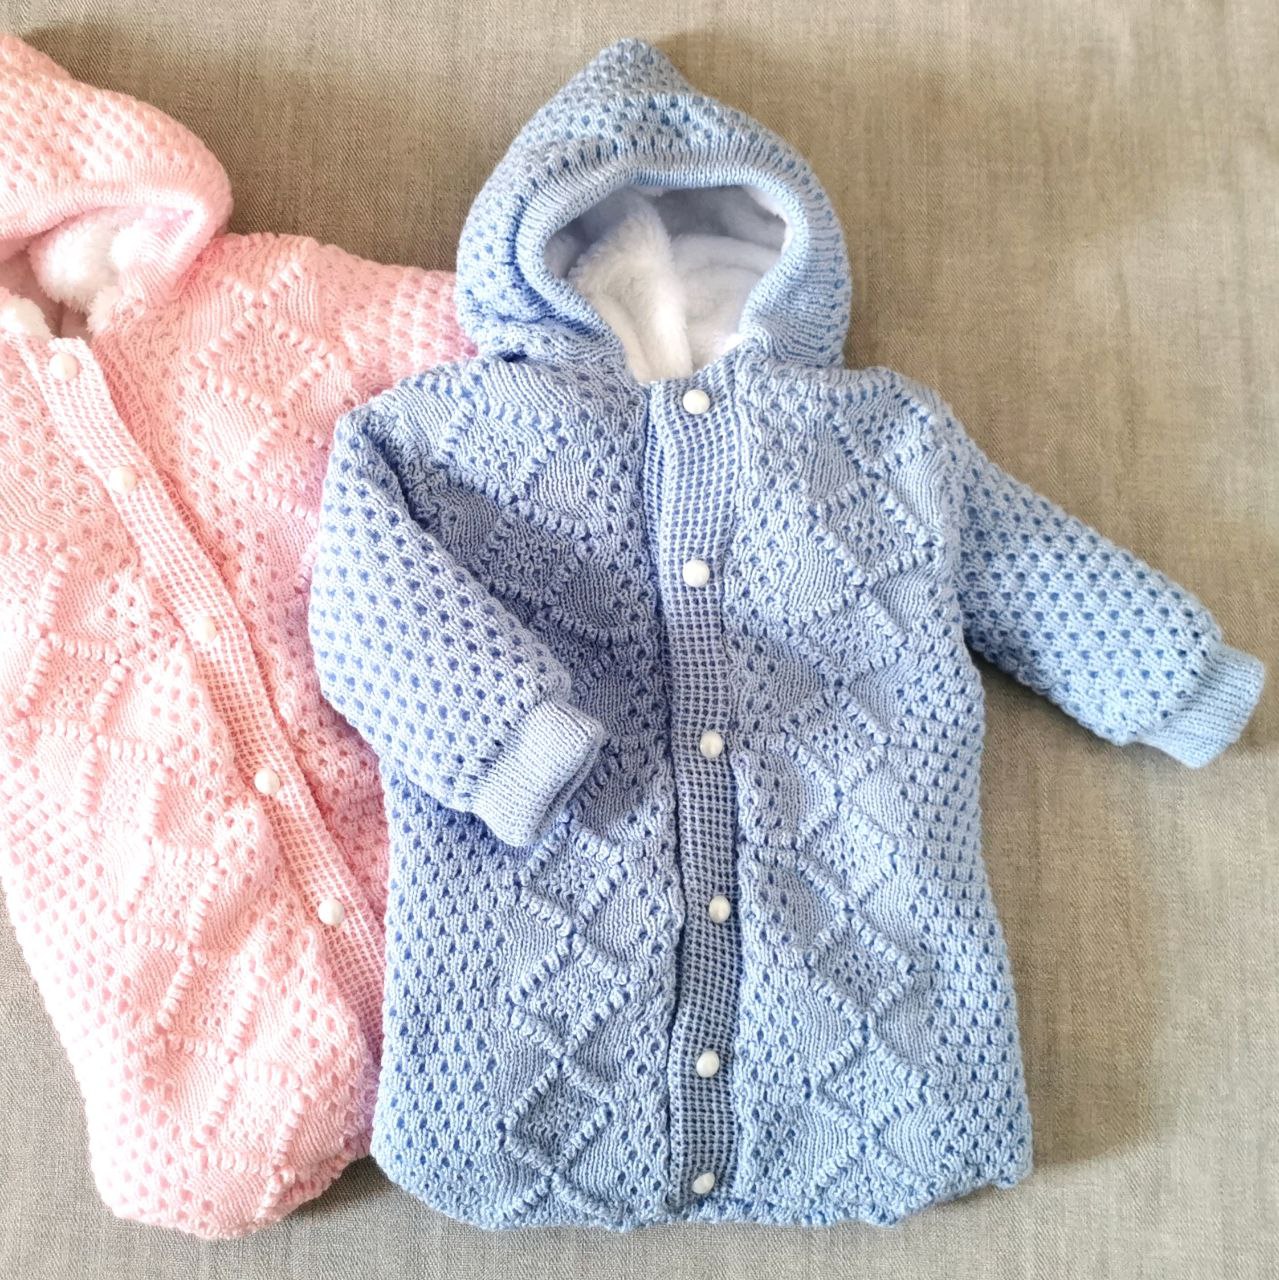 Лучшая одежда для новорожденных деток ⦁ Обзор самых удобных вещей для малыша